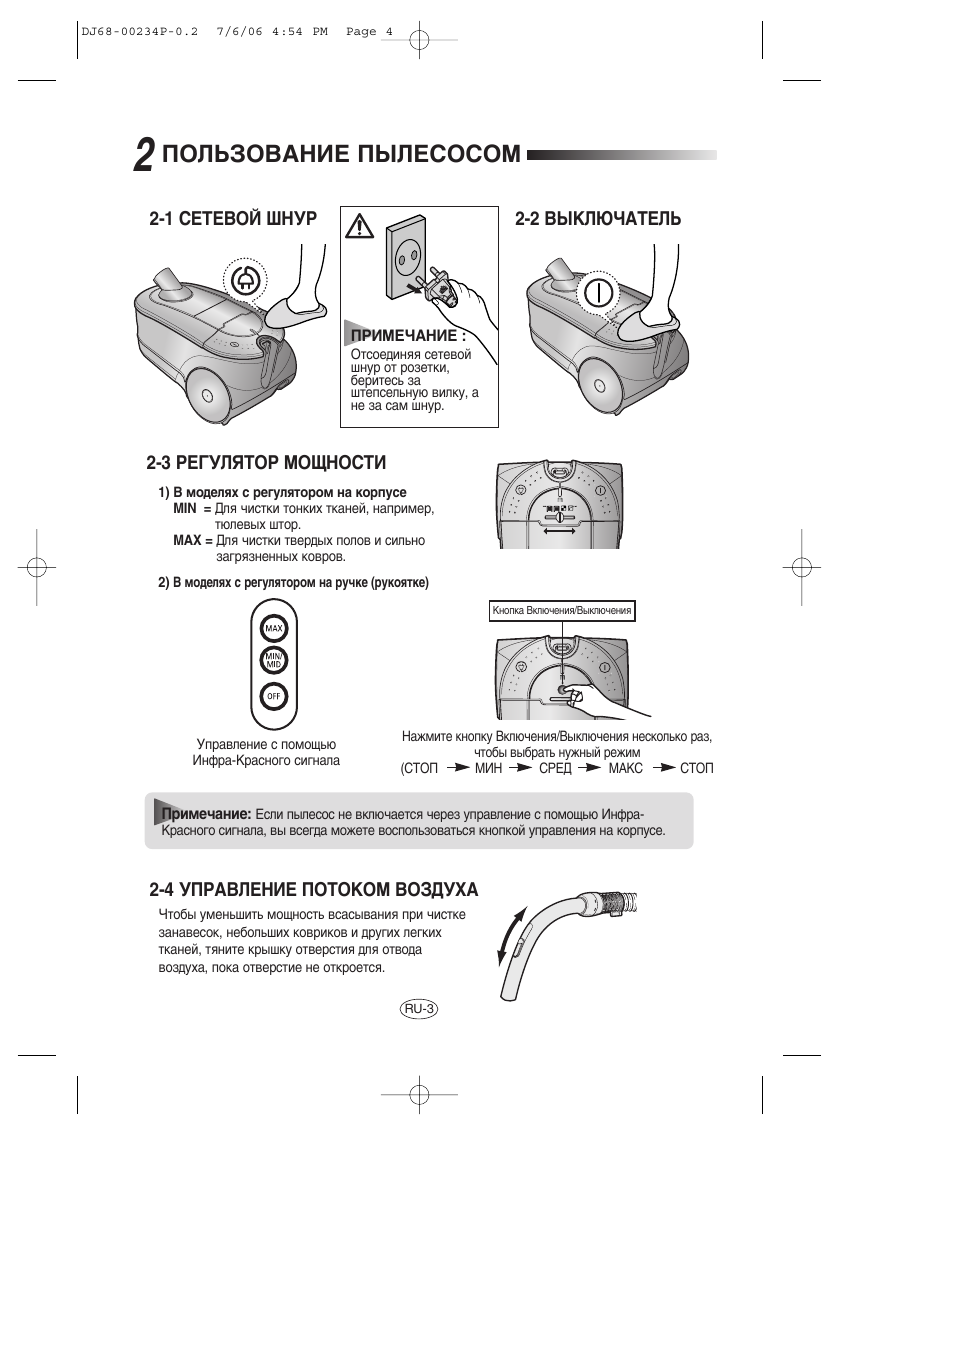 Ийгъбйздзац ихгцлйлйе | Samsung SC7840 User Manual | Page 4 / 56